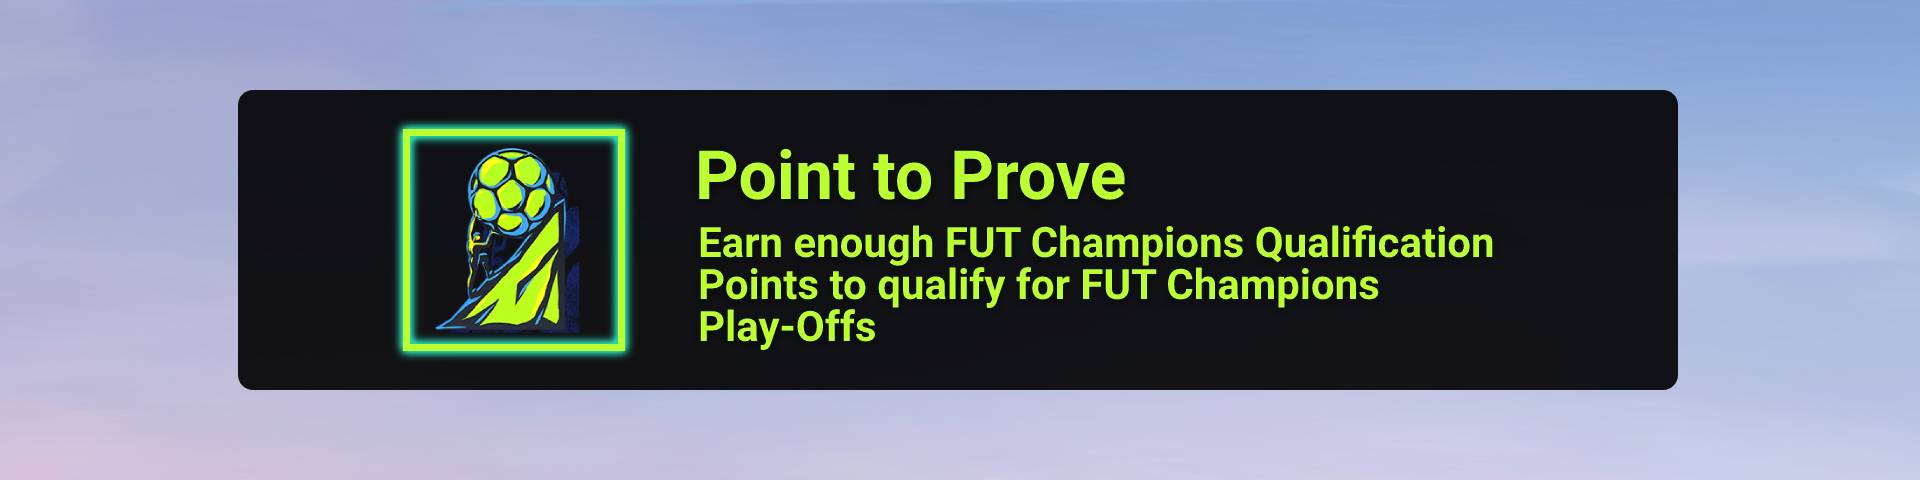 100% Achievement FIFA 22 Guide image 62